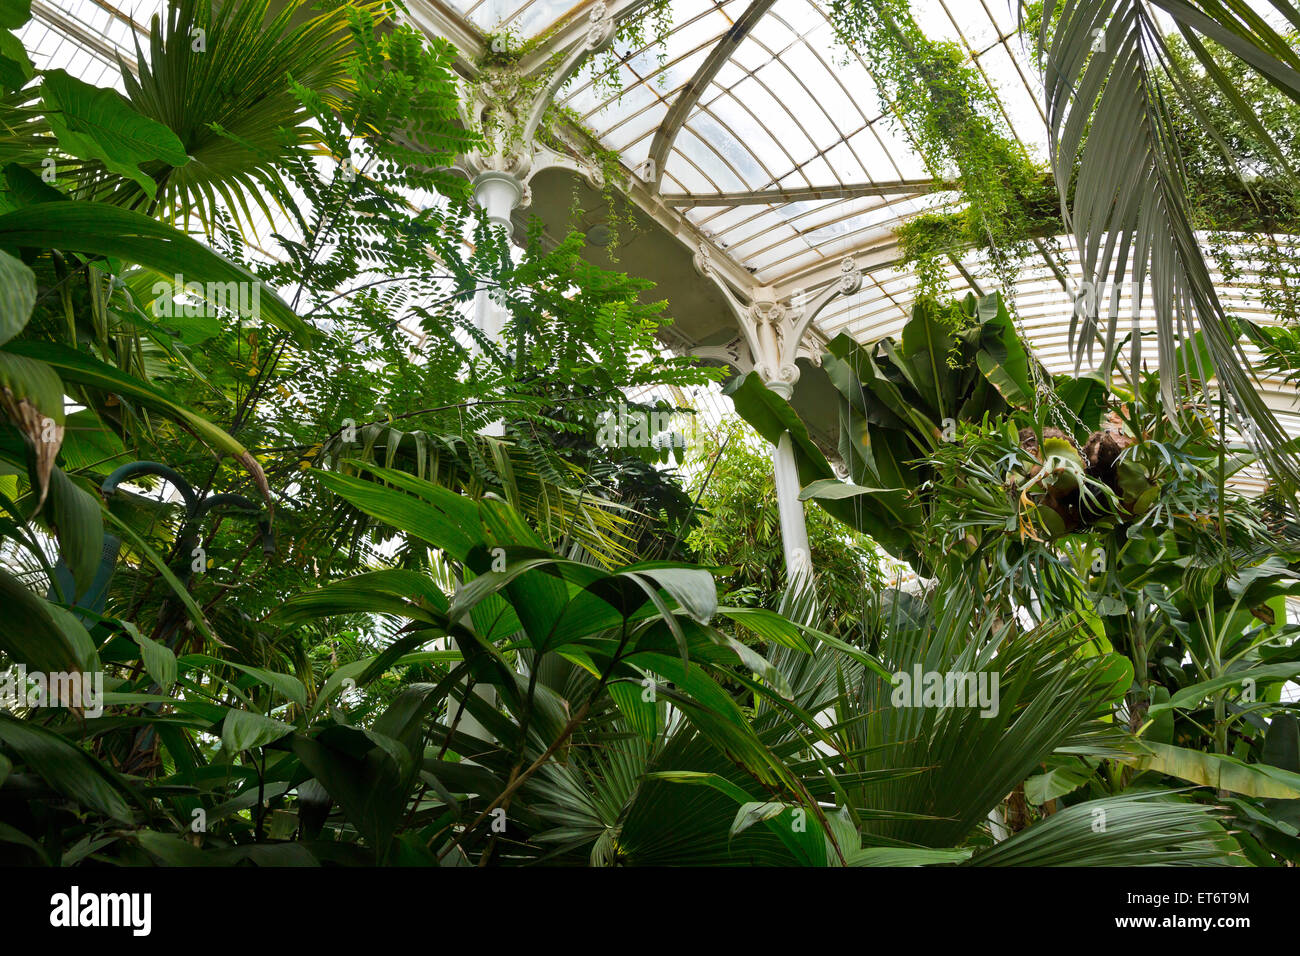 Jardins botaniques royaux de Kew, Palm House - Londres, Royaume-Uni, Europe Banque D'Images